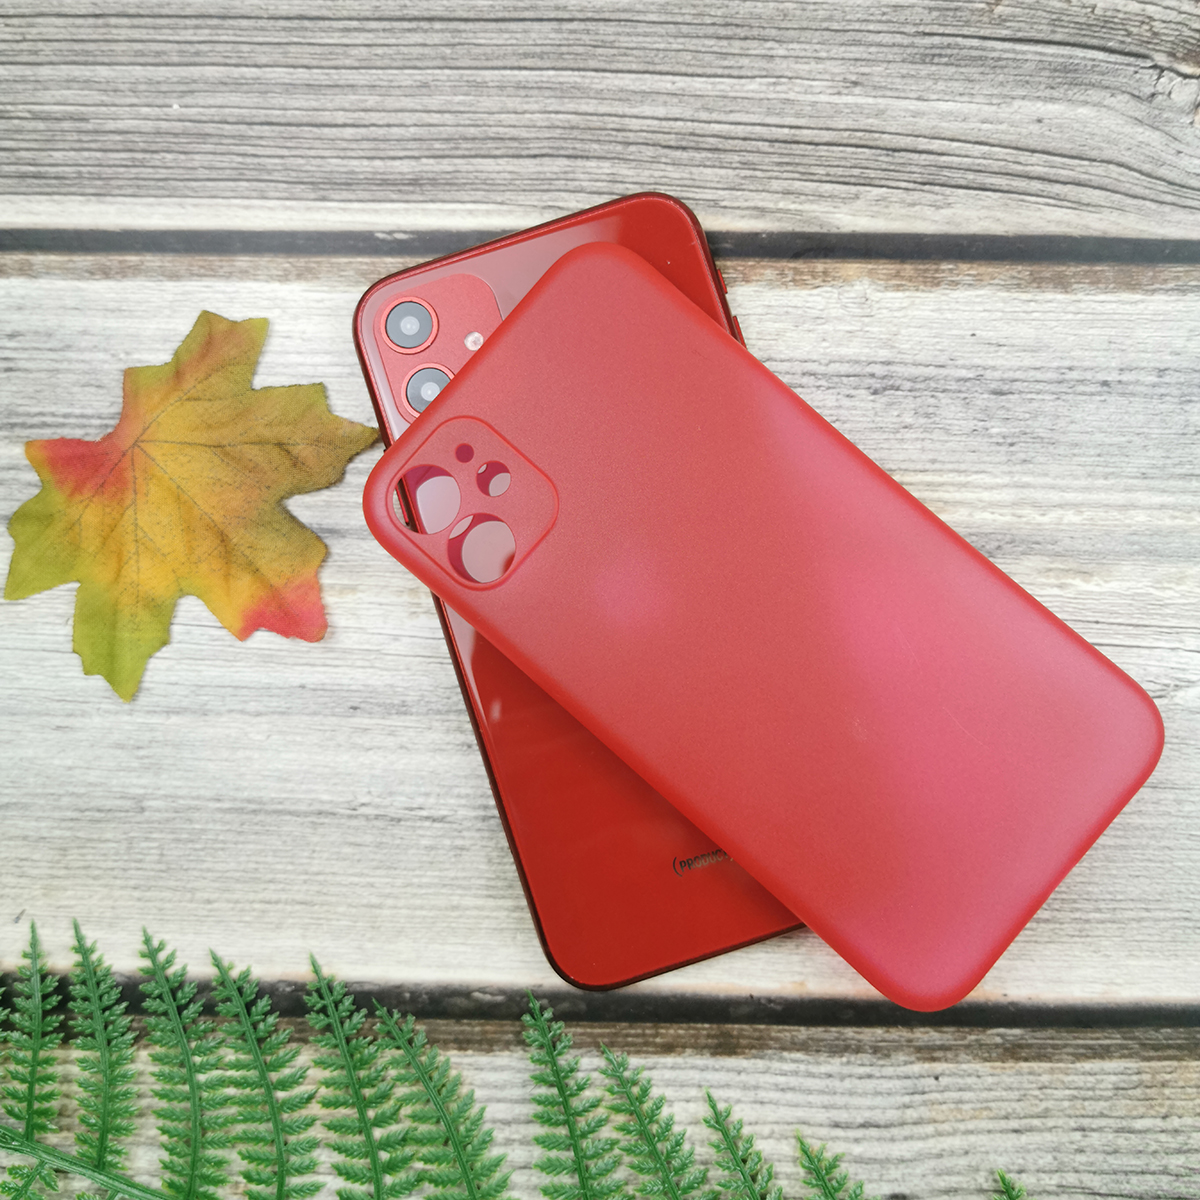 313095 รุ่น iPhone 5/5s / SE สีแดง กึ่งโปร่ง
